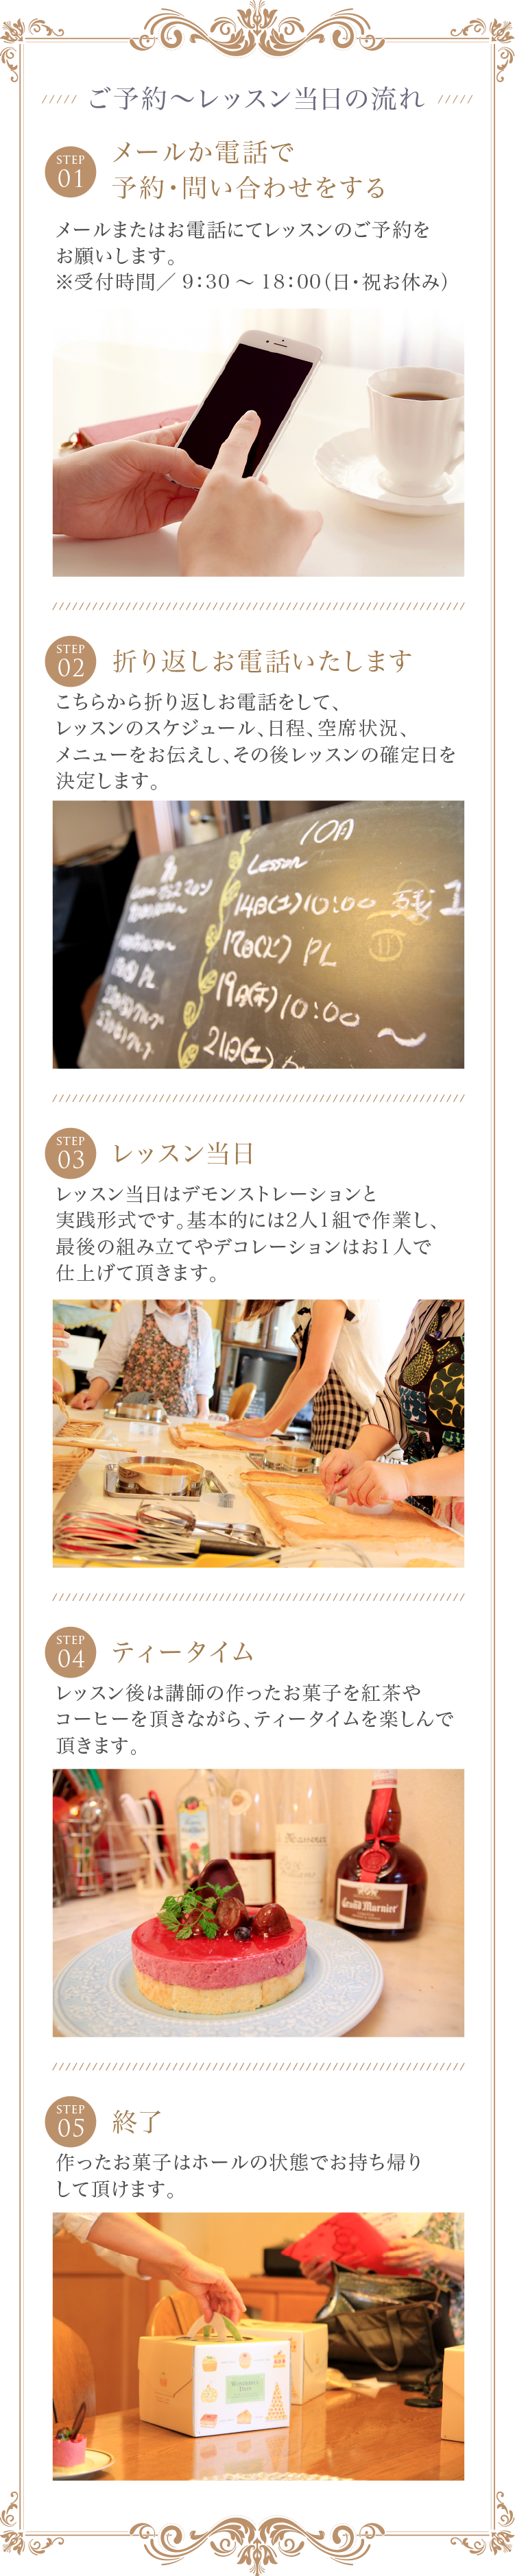 熊本にある「HMIKIフランス菓子教室」のご予約〜レッスン当日の流れ